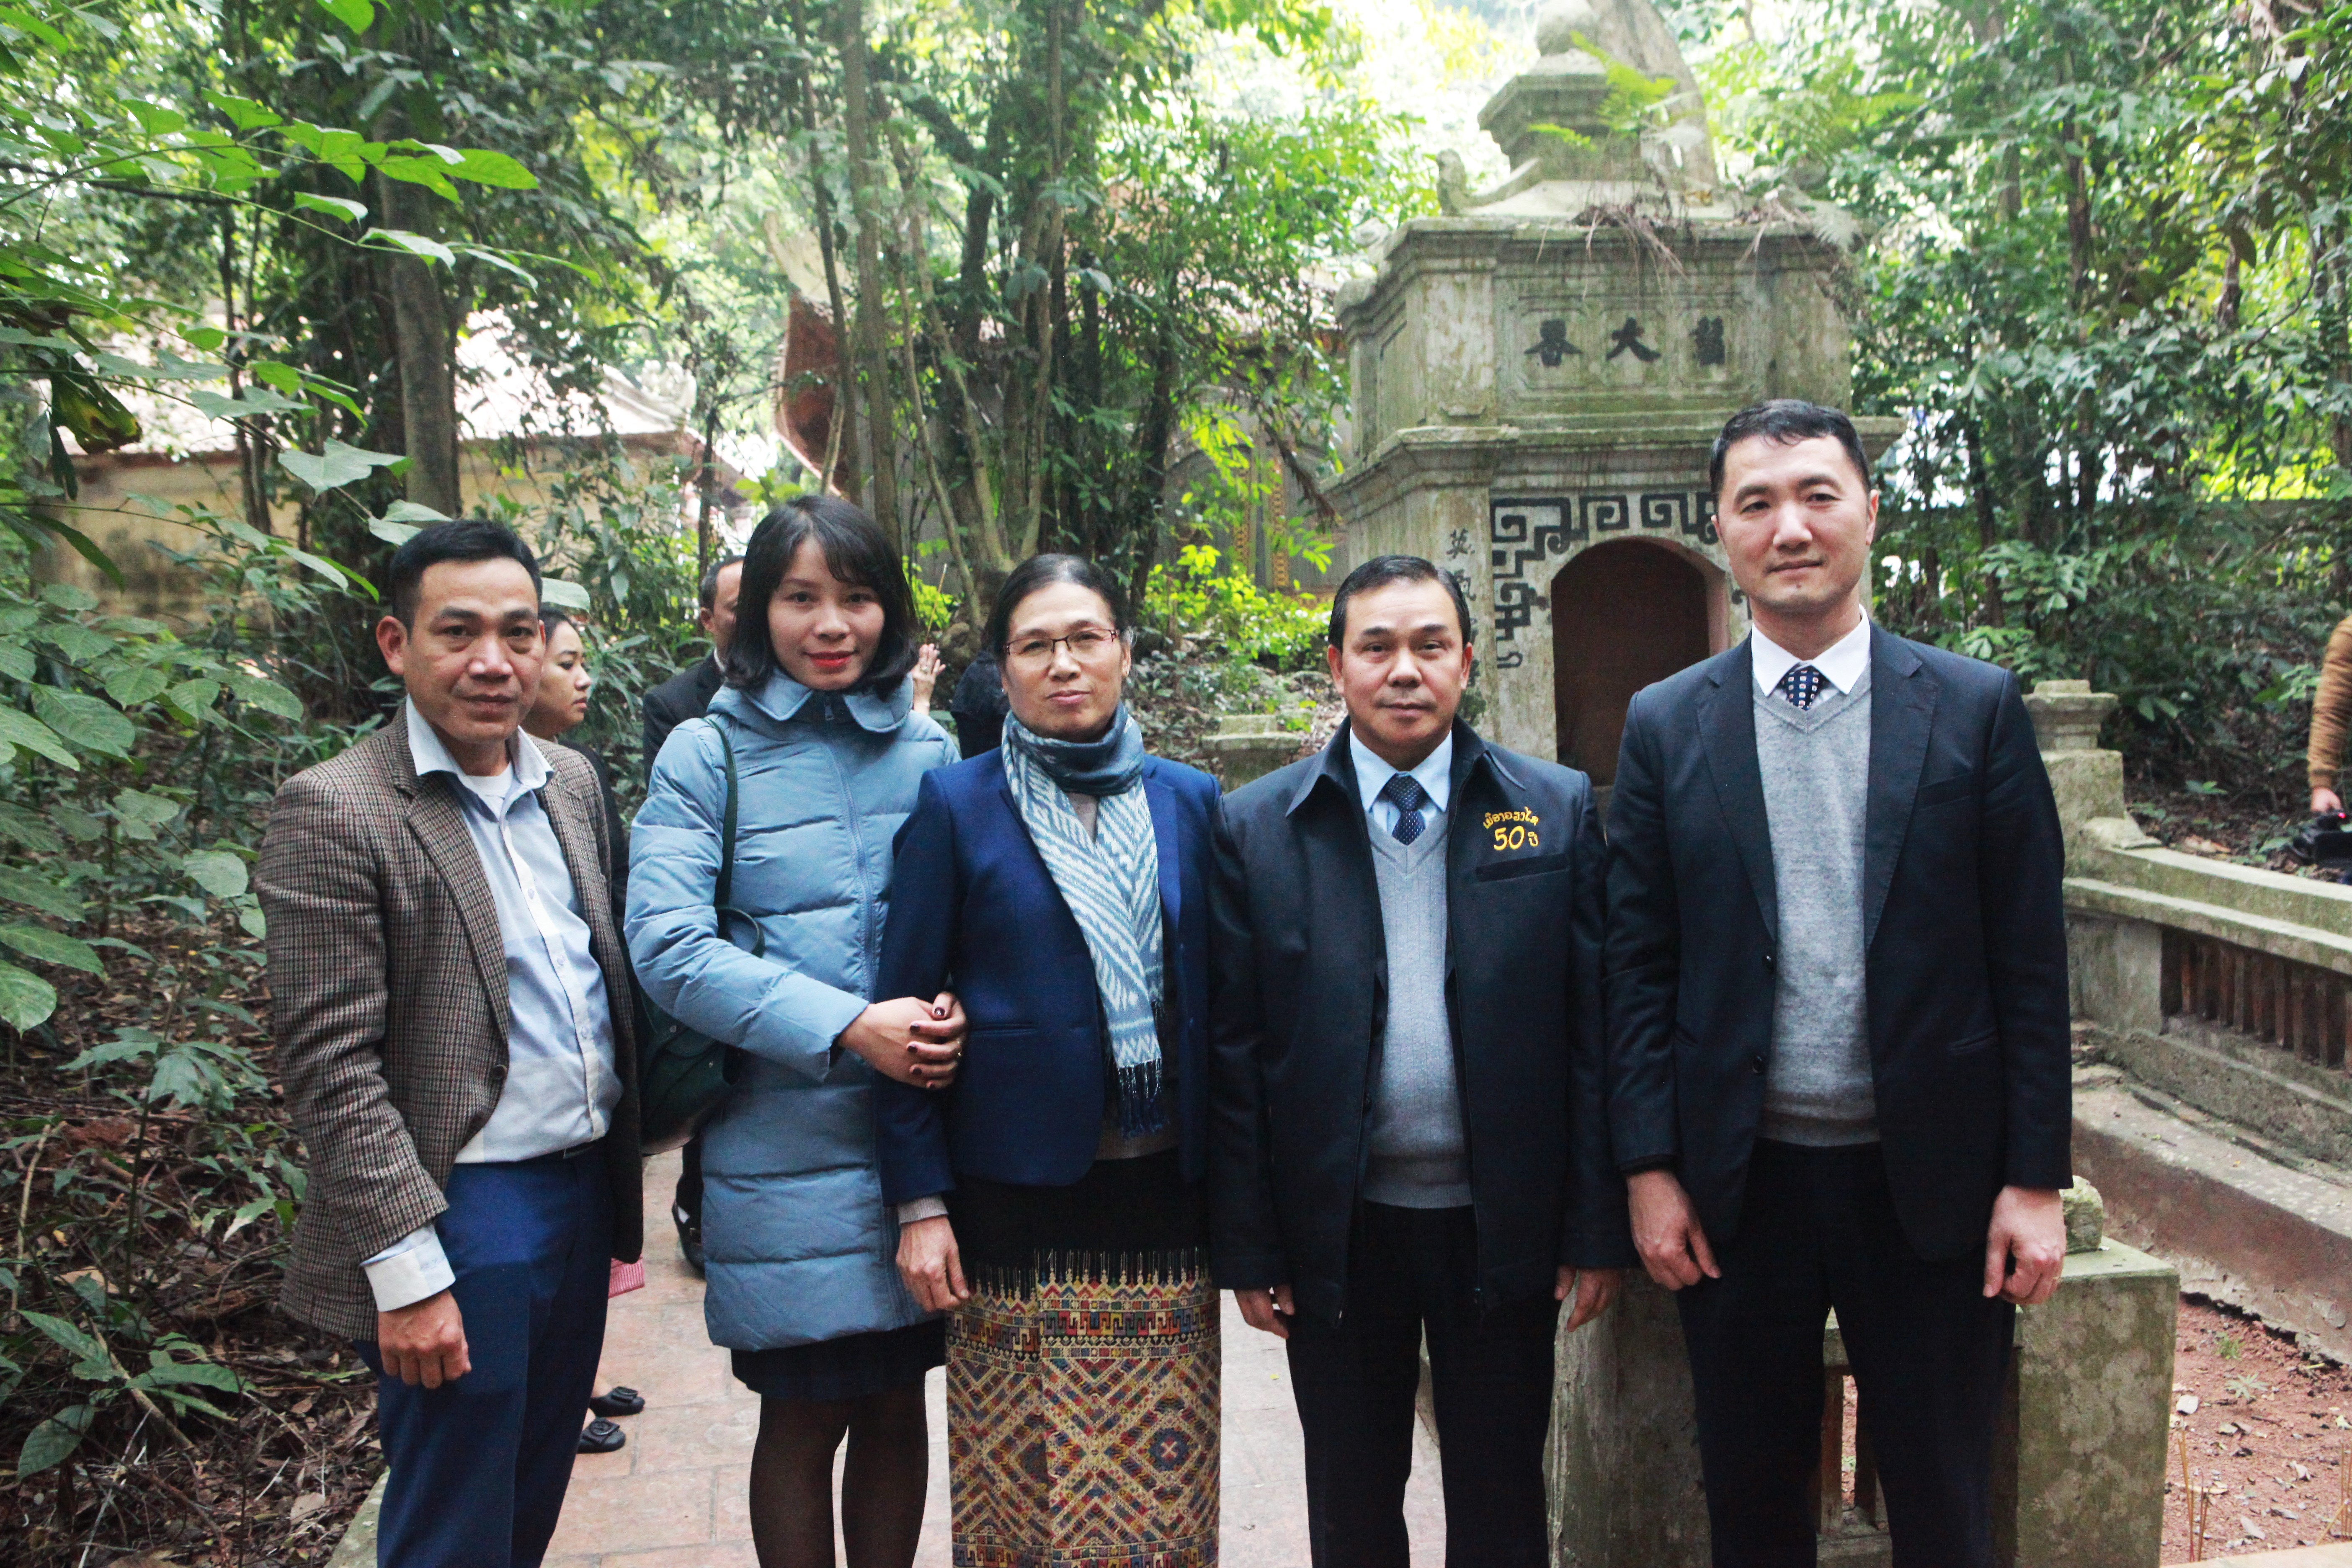 Đại sứ đặc mệnh toàn quyền nước Cộng hòa dân chủ nhân dân Lào Sengphet Houngboungnuang (thứ hai, từ phải sang) cùng các cán bộ Đại sứ quán Lào đã đến viếng đền thờ công chúa Nhồi Hoa vào tháng 12/2020 (Ảnh: Hải An).